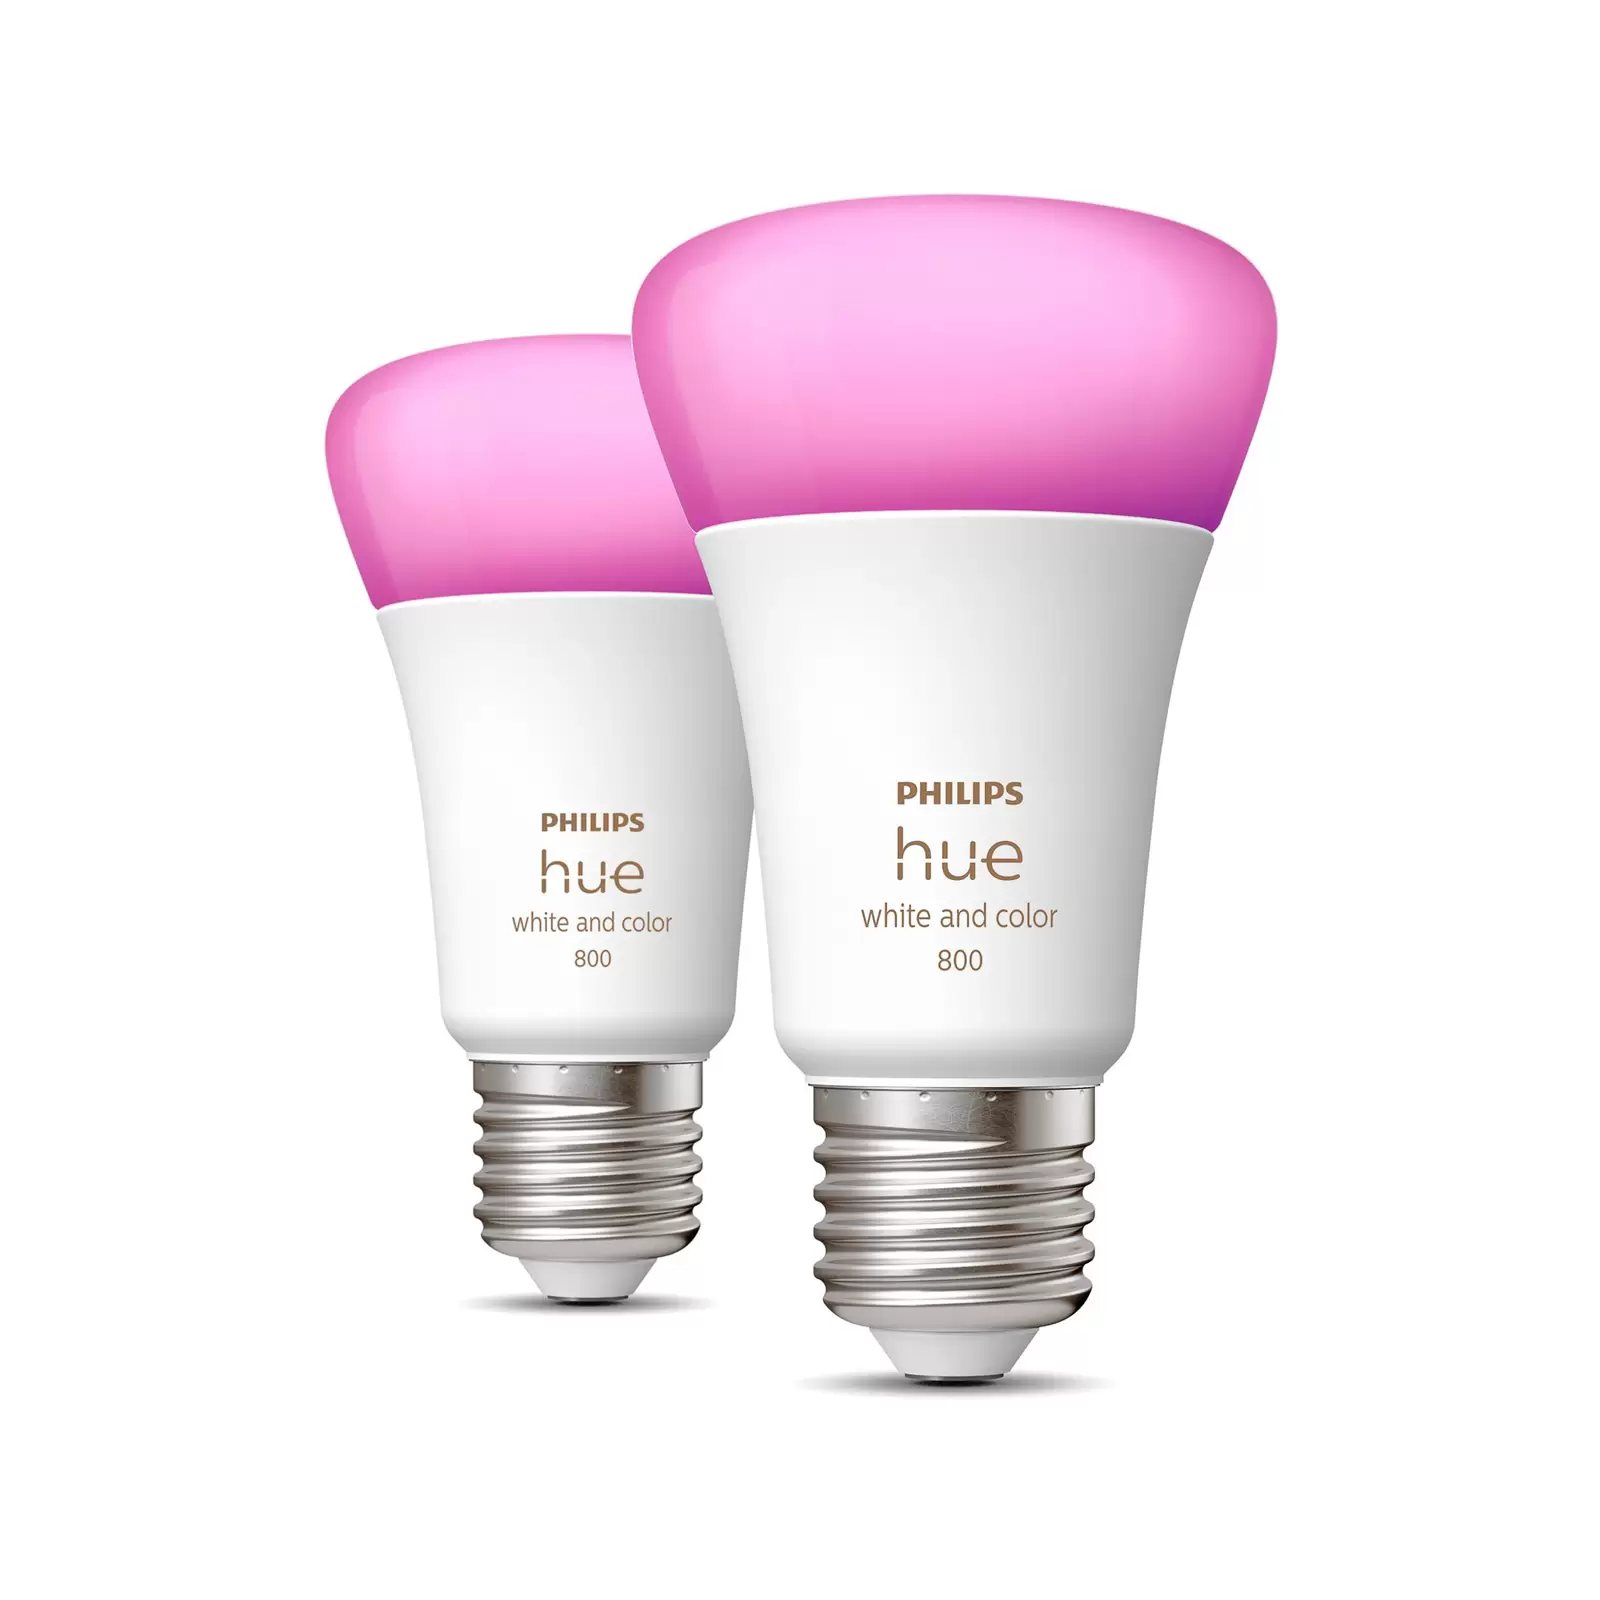 Las bombillas Hue de Philips se actualizan y ya son compatibles